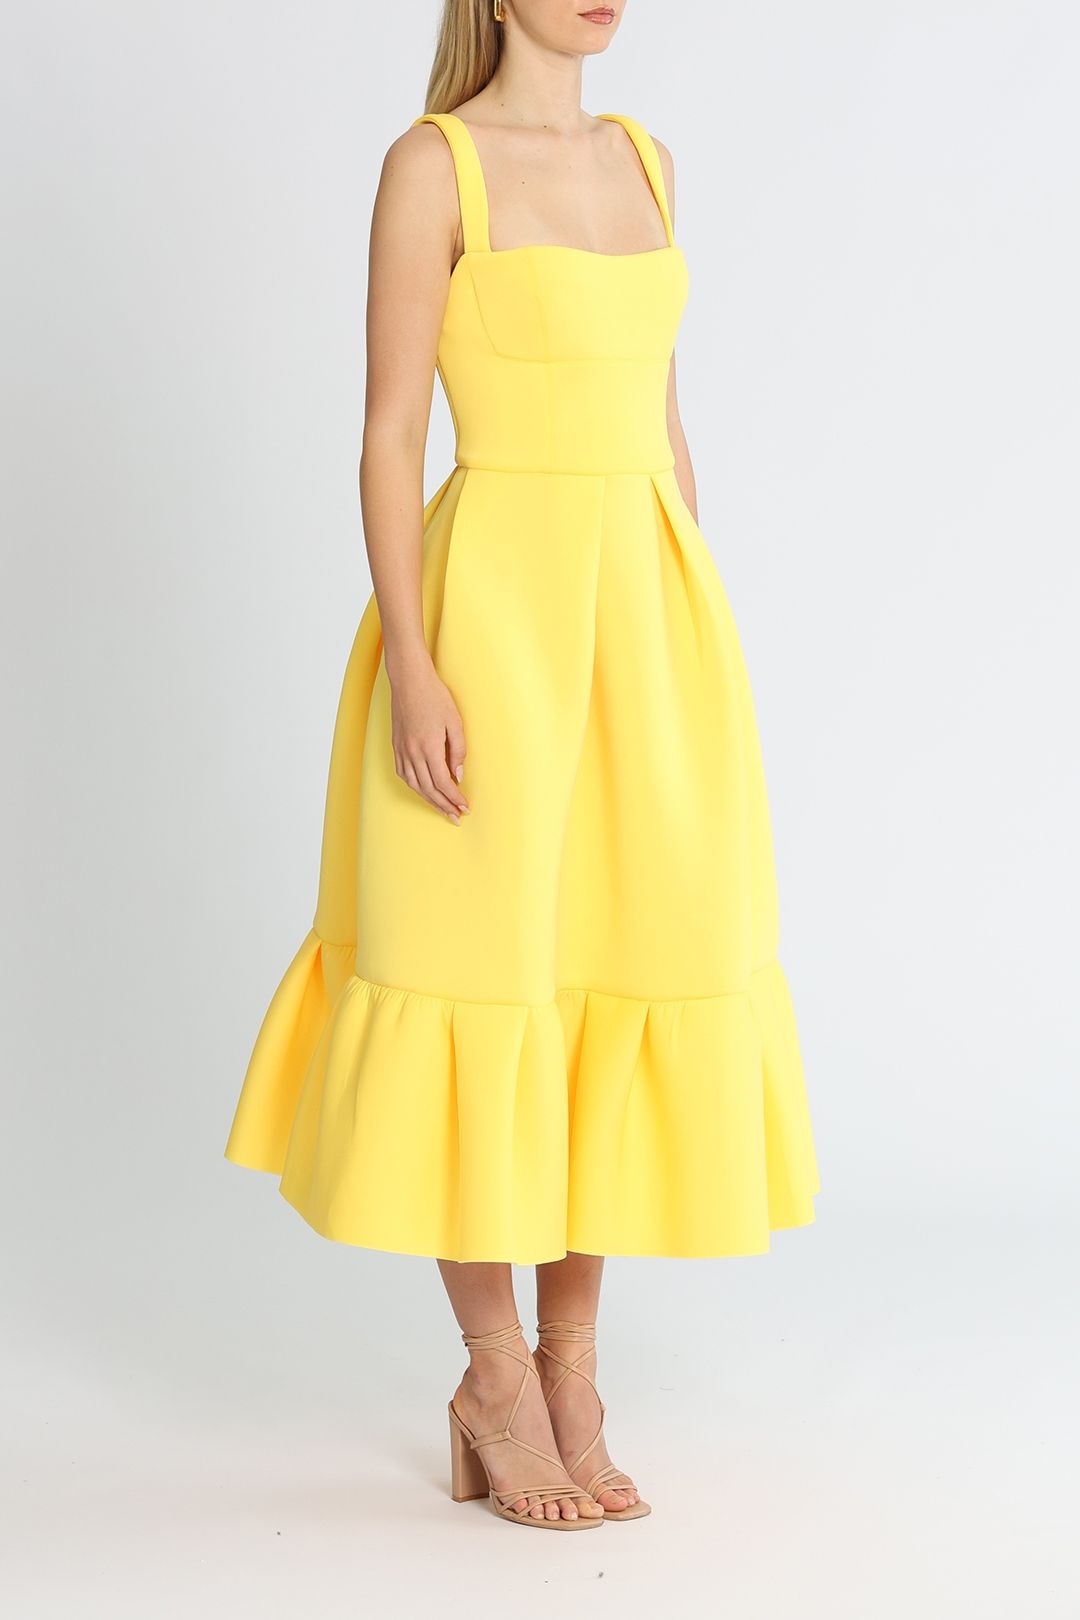 Rachel Gilbert Cora Dress Yellow